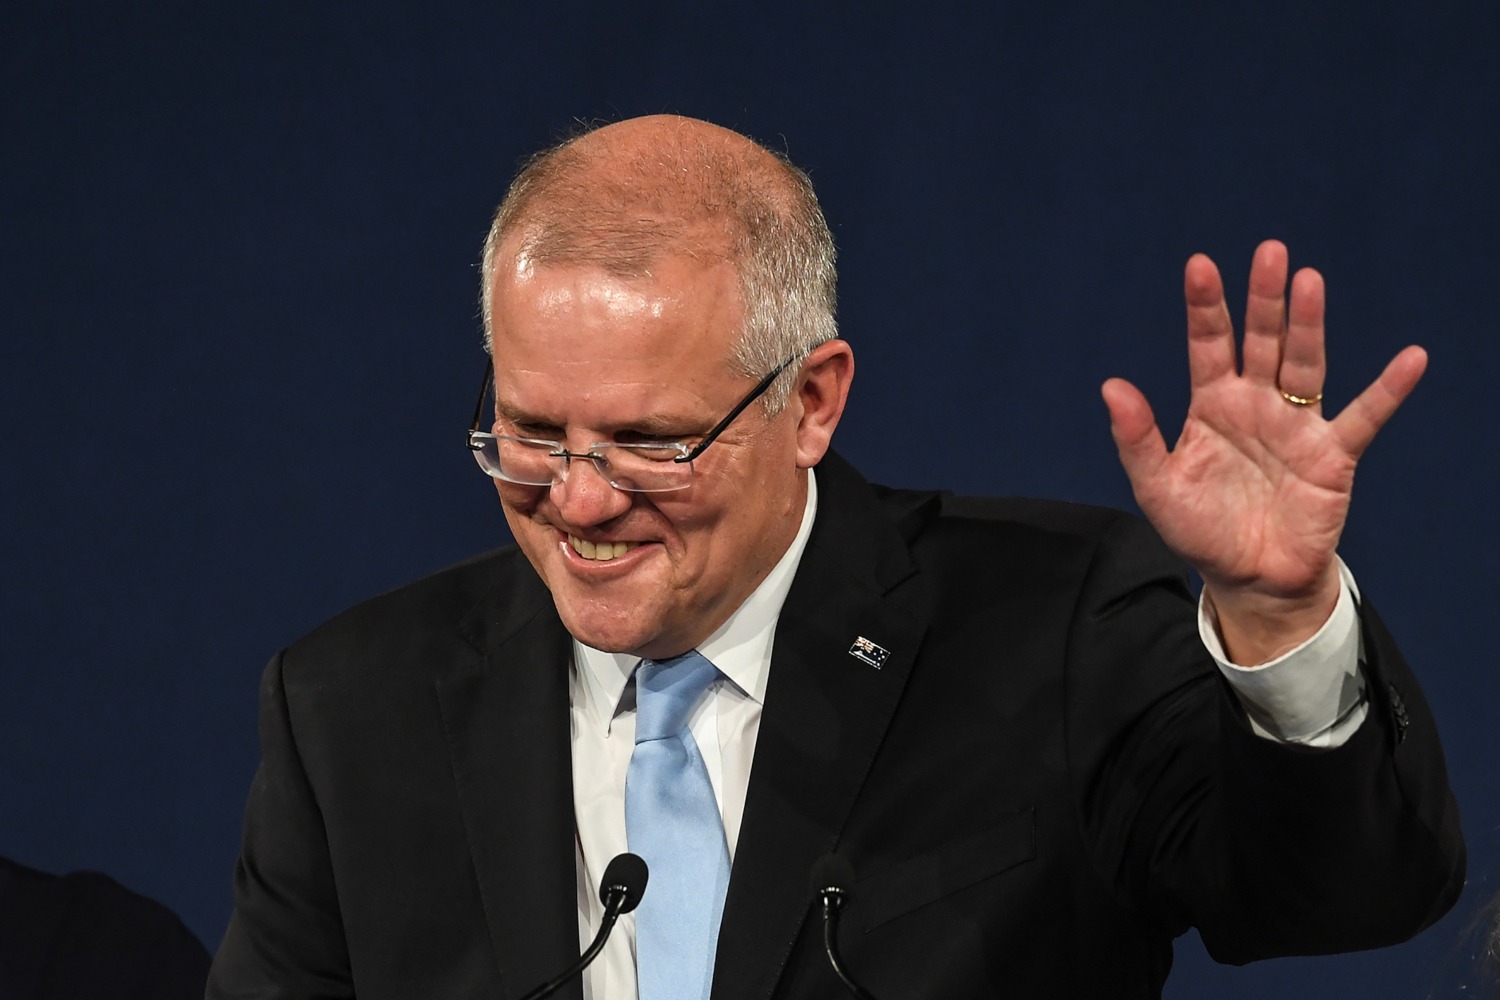 El primer ministro australiano revalida su mandato en las elecciones